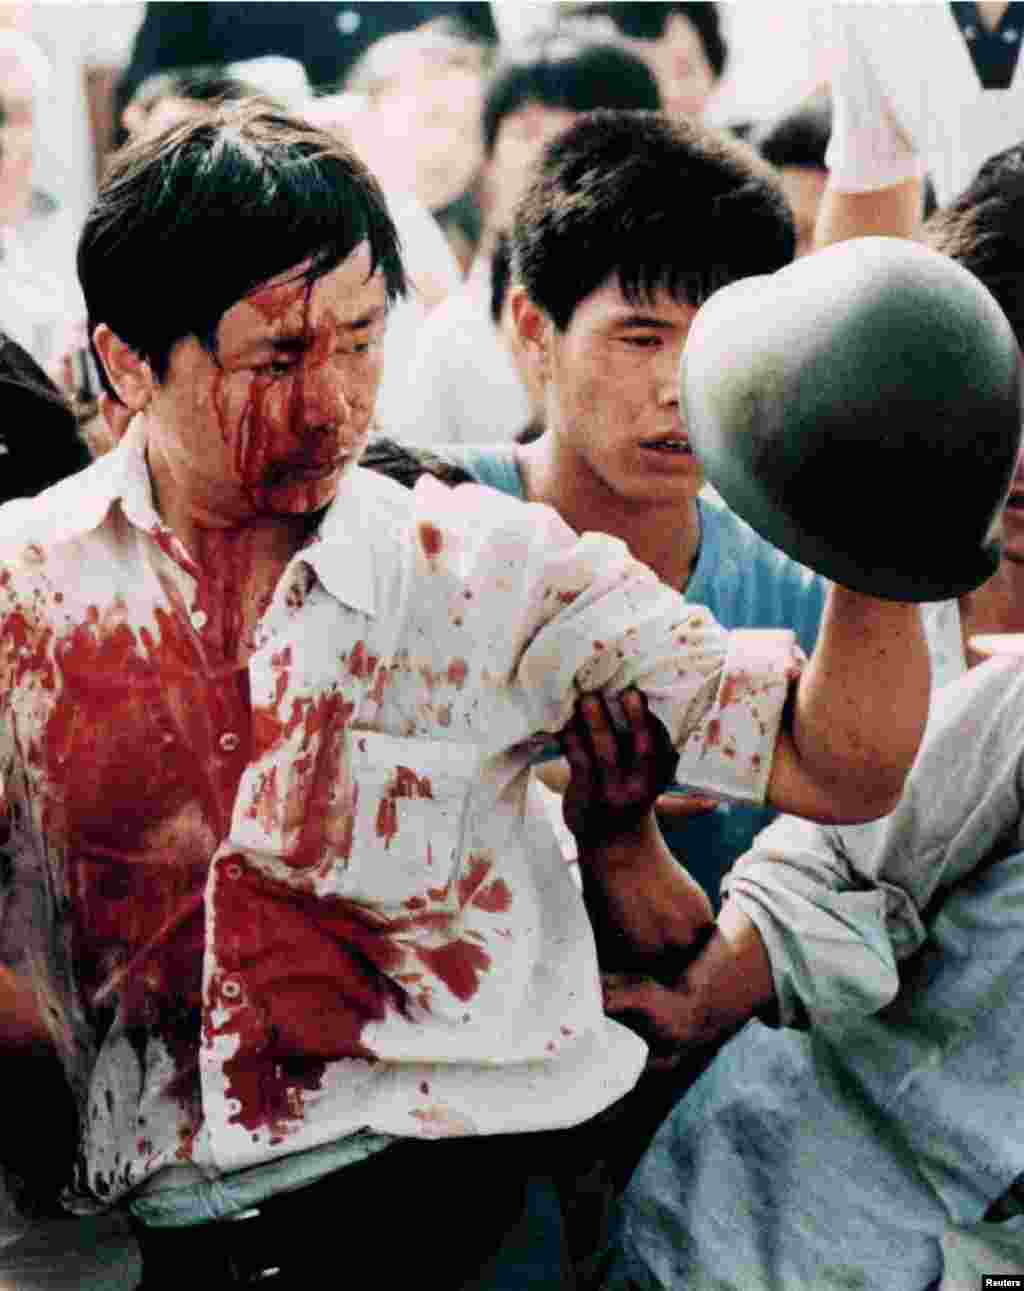 Demonstran bersimbah darah memegang helm tentara China dalam bentrokan penuh kekerasan dengan pasukan militer dalam demonstrasi pro-demokrasi di Alun-alun Tiananmen, Beijing, 4 Juni 1989.